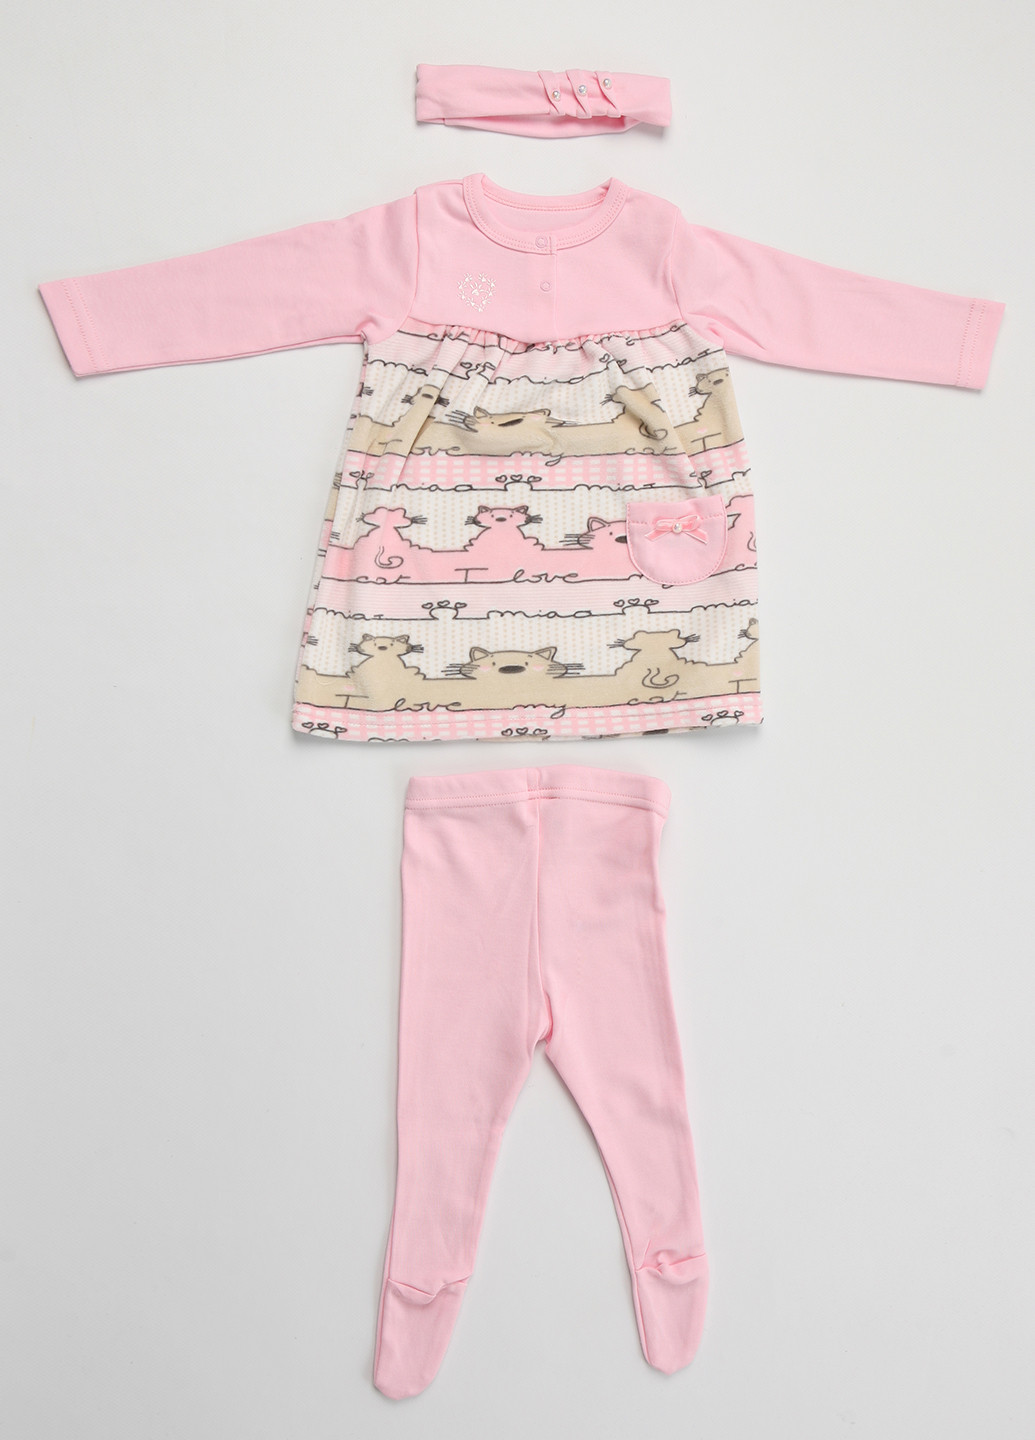 Розовый демисезонный комплект (платье, ползунки, повязка) Фламинго